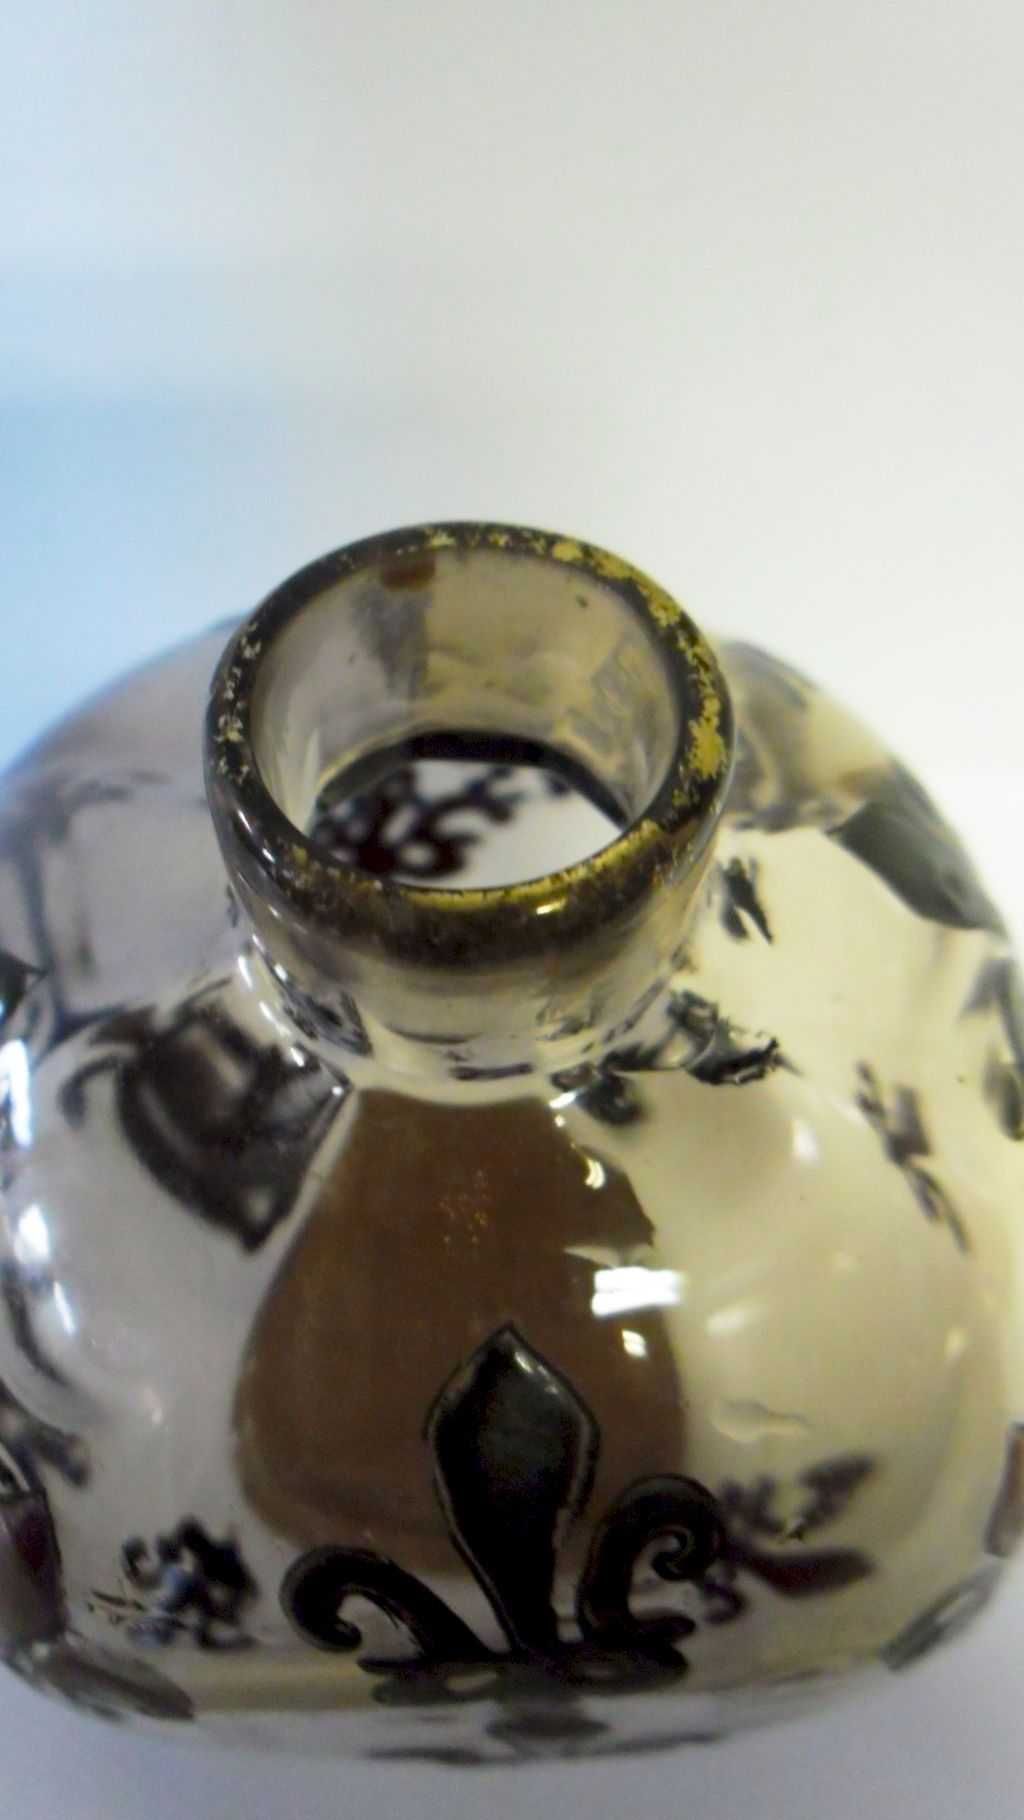 único antique francês frasco de perfume-assinado Emile Gallé